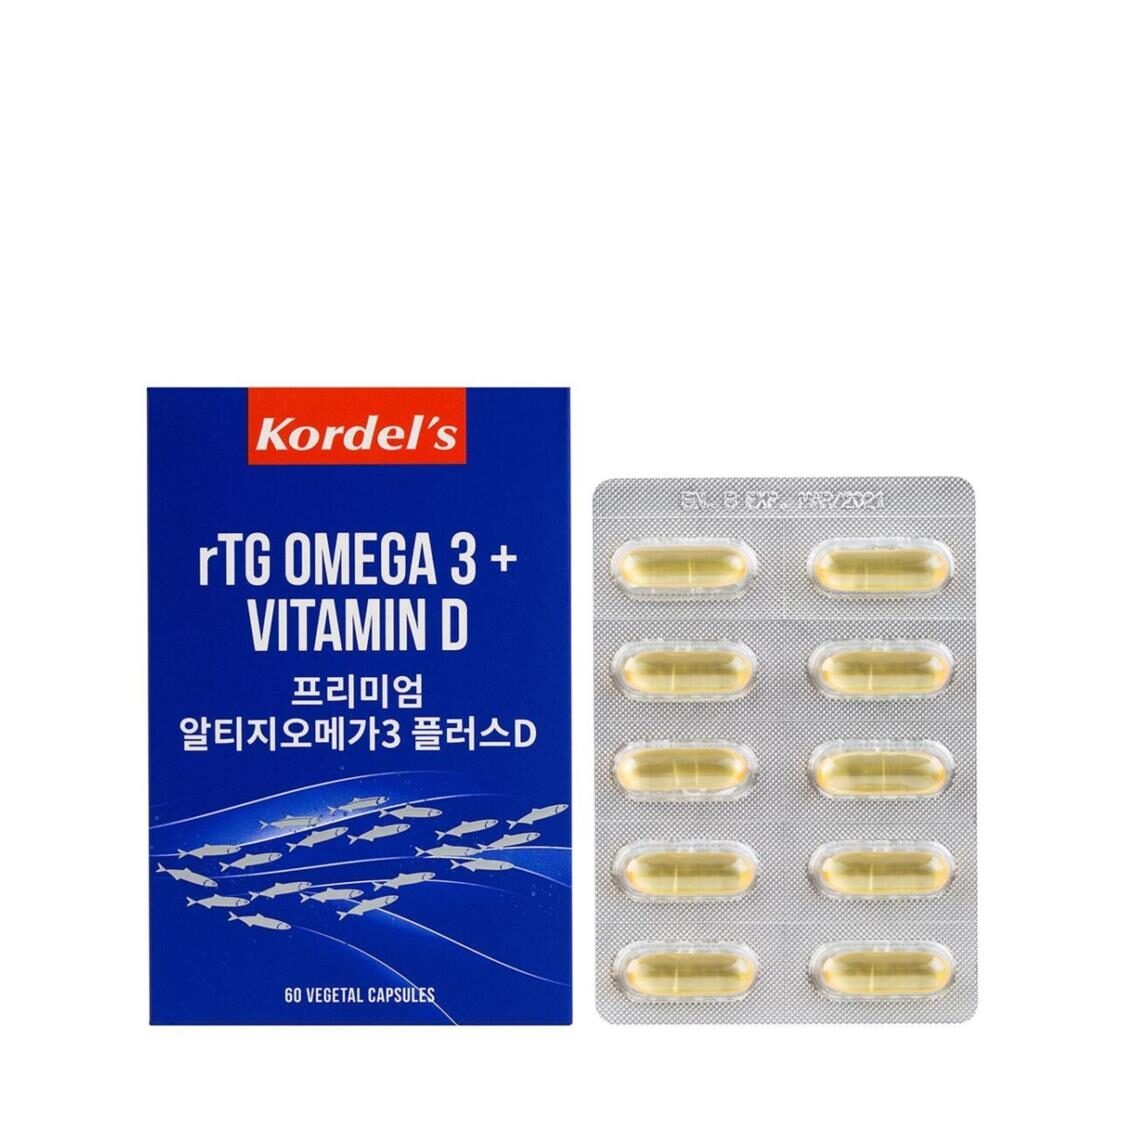 Kordels rTG Omega 3  Vitamin D 60s